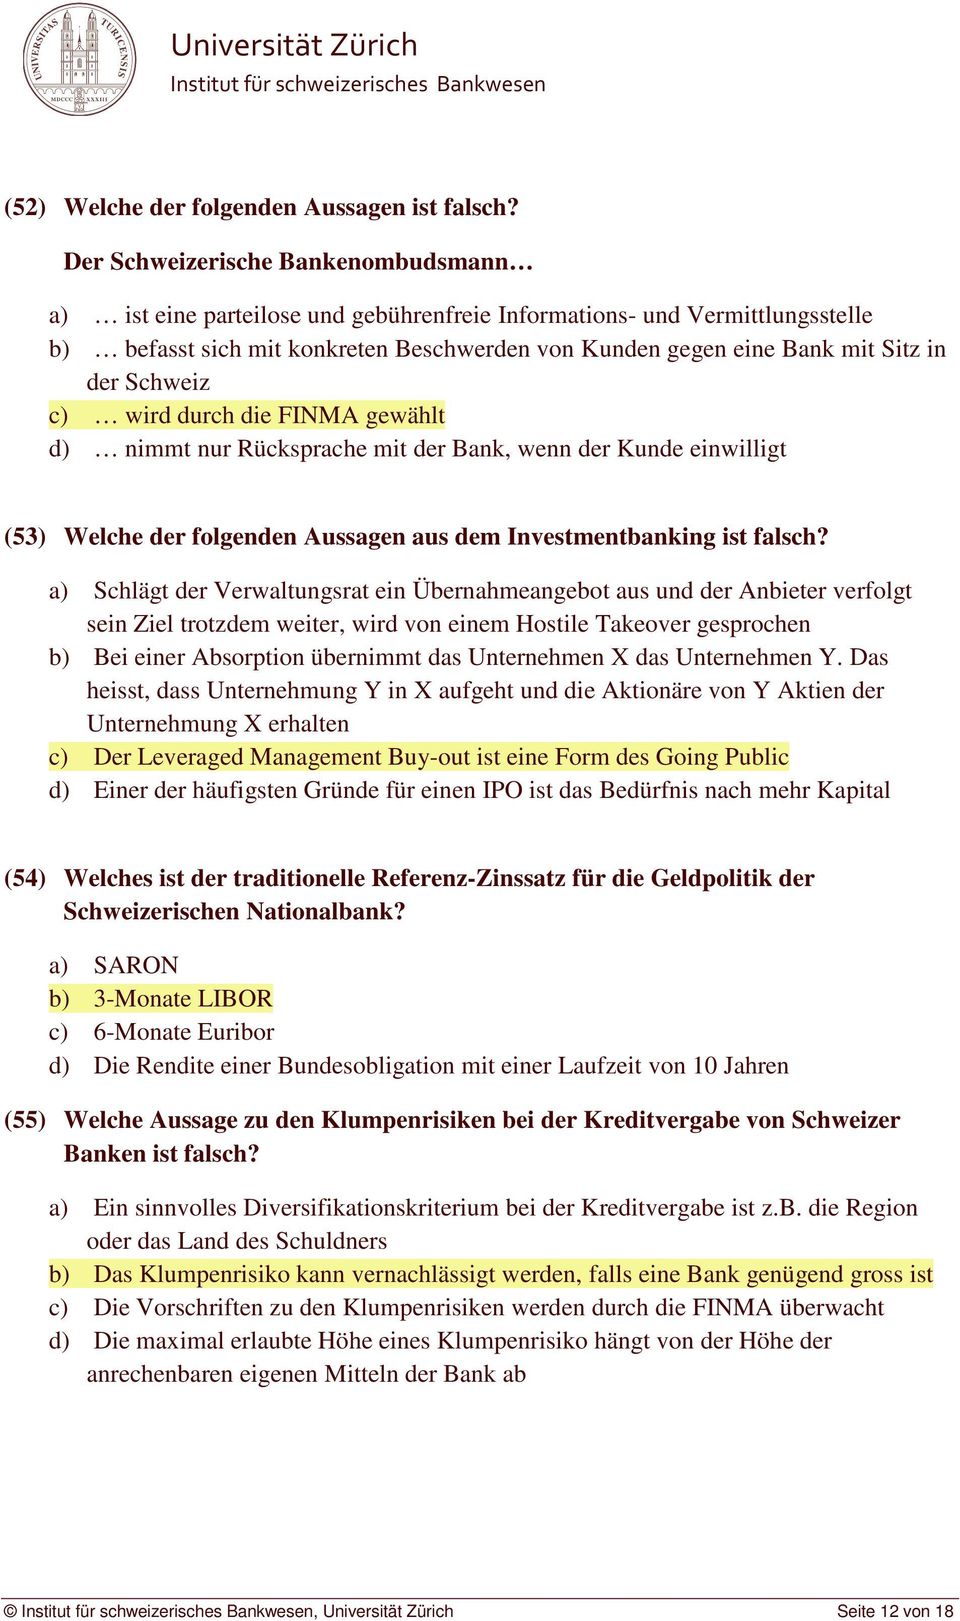 Schweiz c) wird durch die FINMA gewählt d) nimmt nur Rücksprache mit der Bank, wenn der Kunde einwilligt (53) Welche der folgenden Aussagen aus dem Investmentbanking ist falsch?